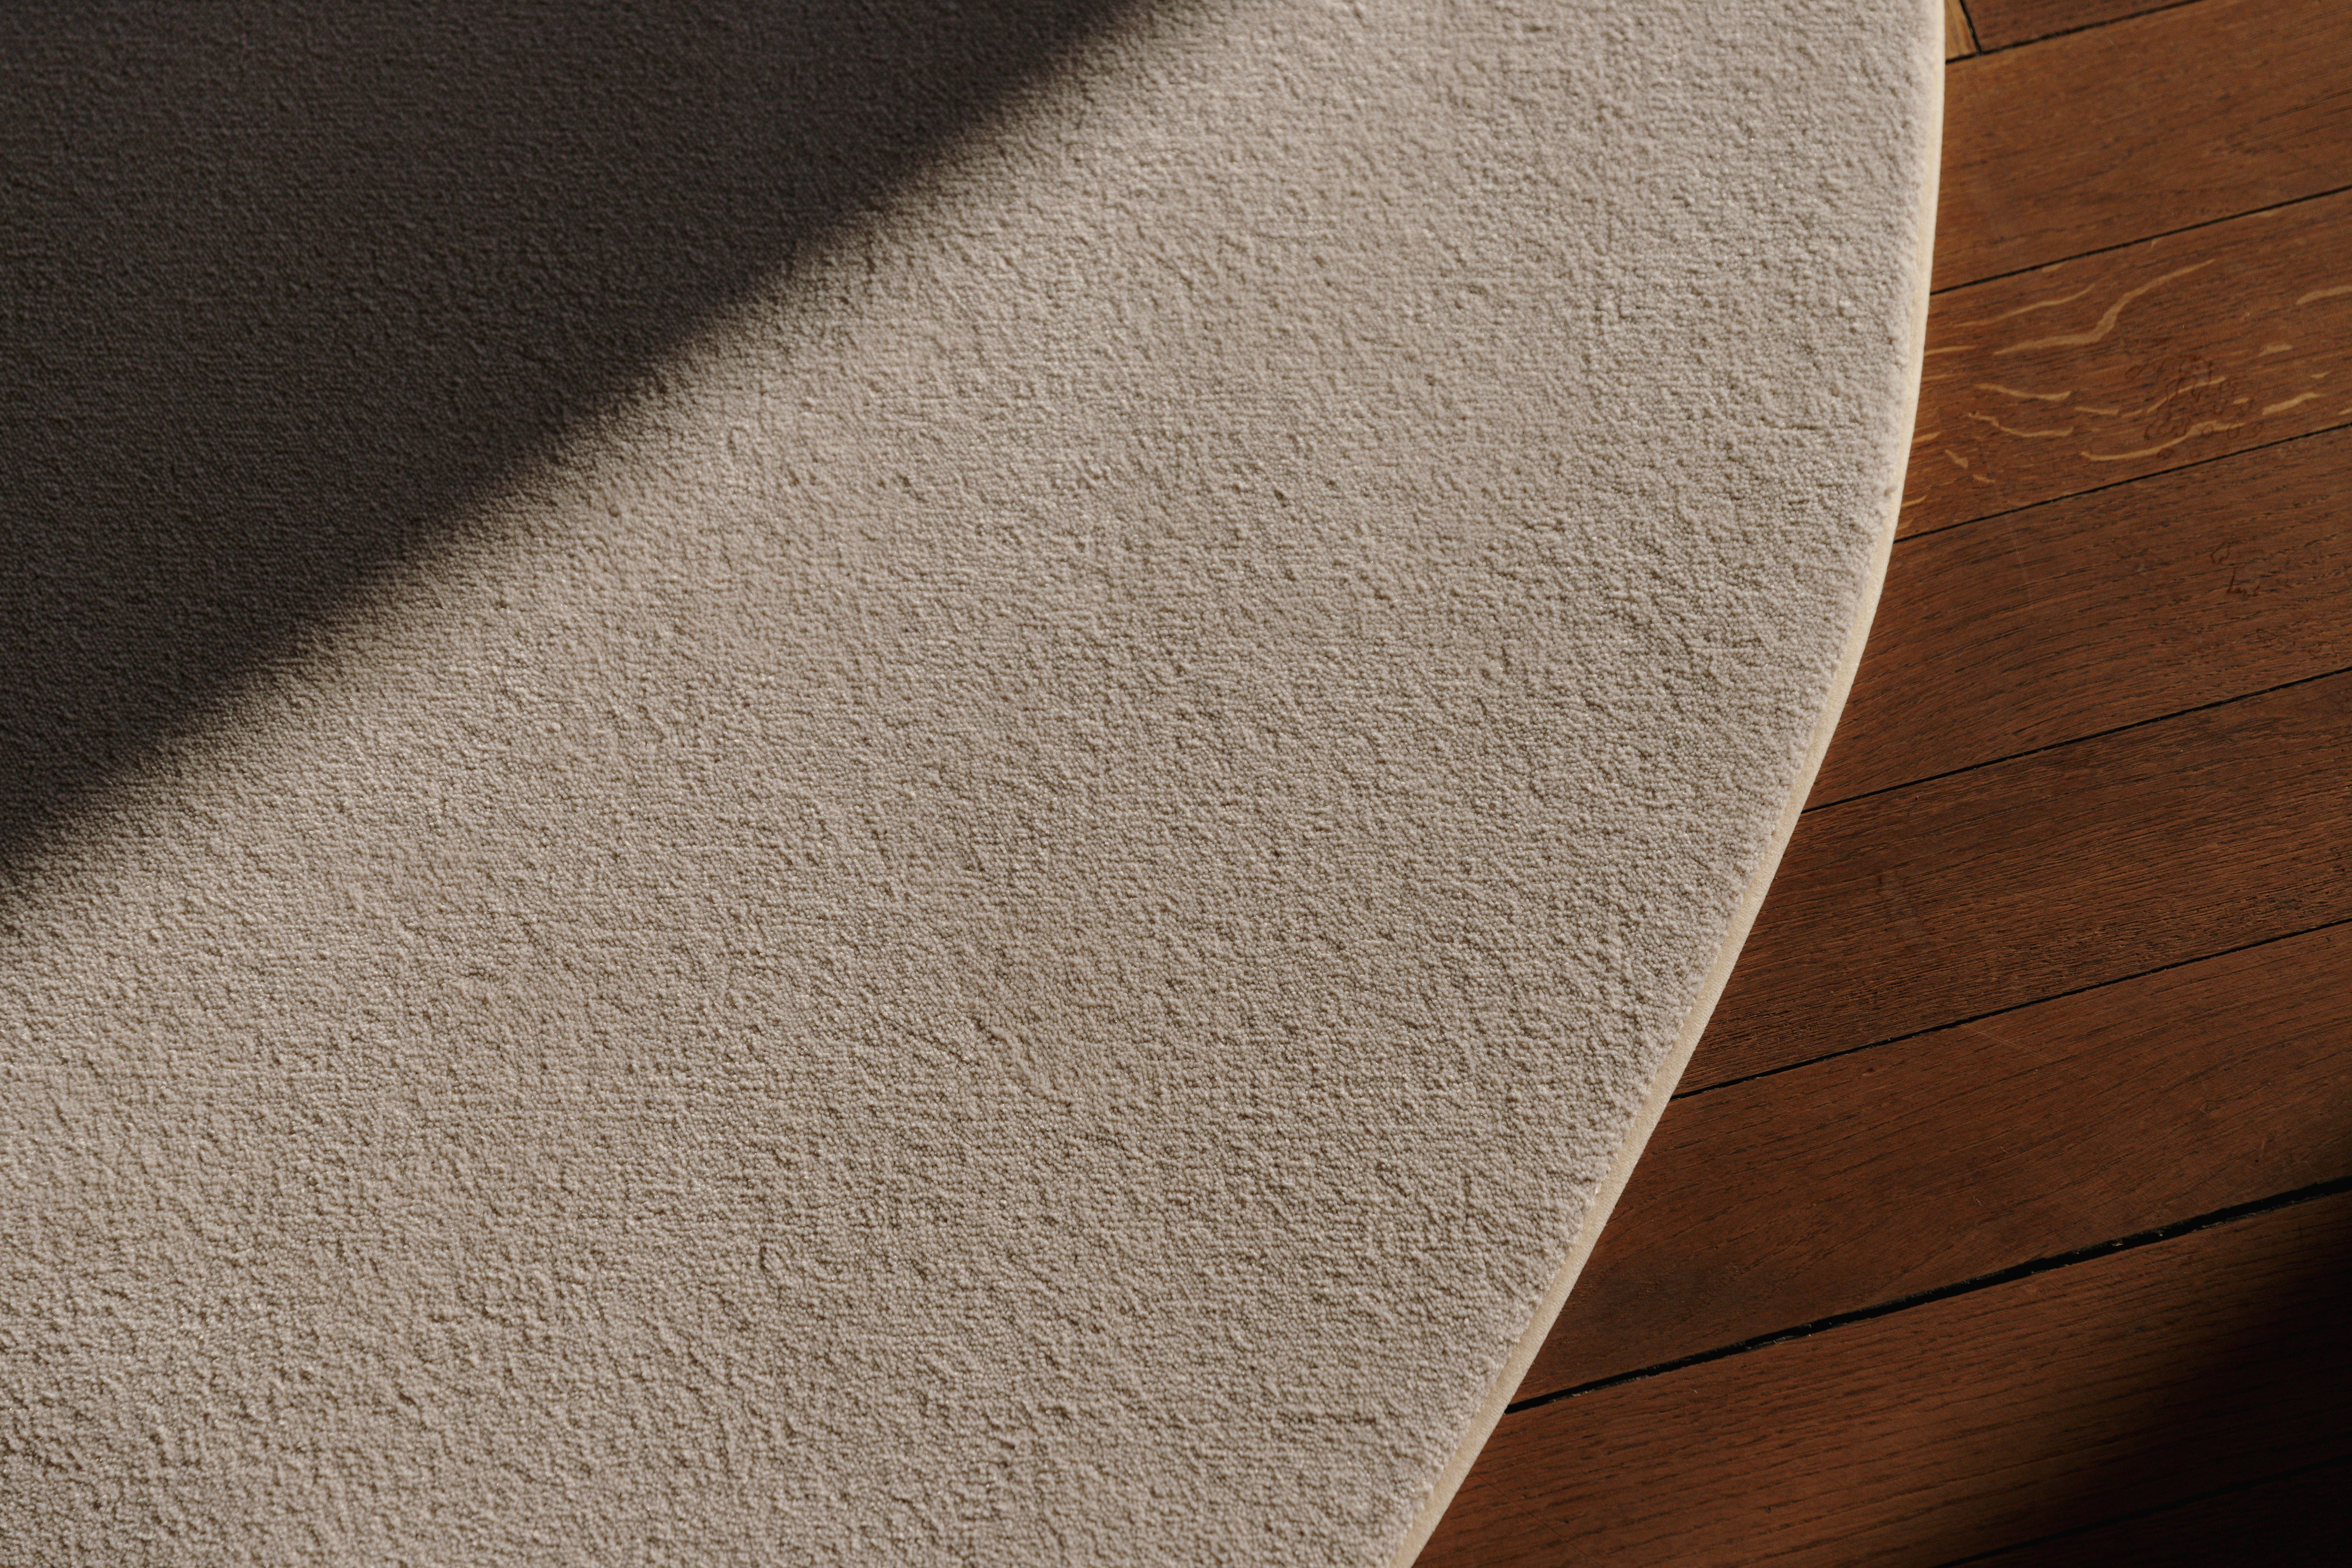 Detail zacht en gerecyceld tapijt met gepersonaliseerde kleurrand met natuurlijk zonlicht op houten vloer.